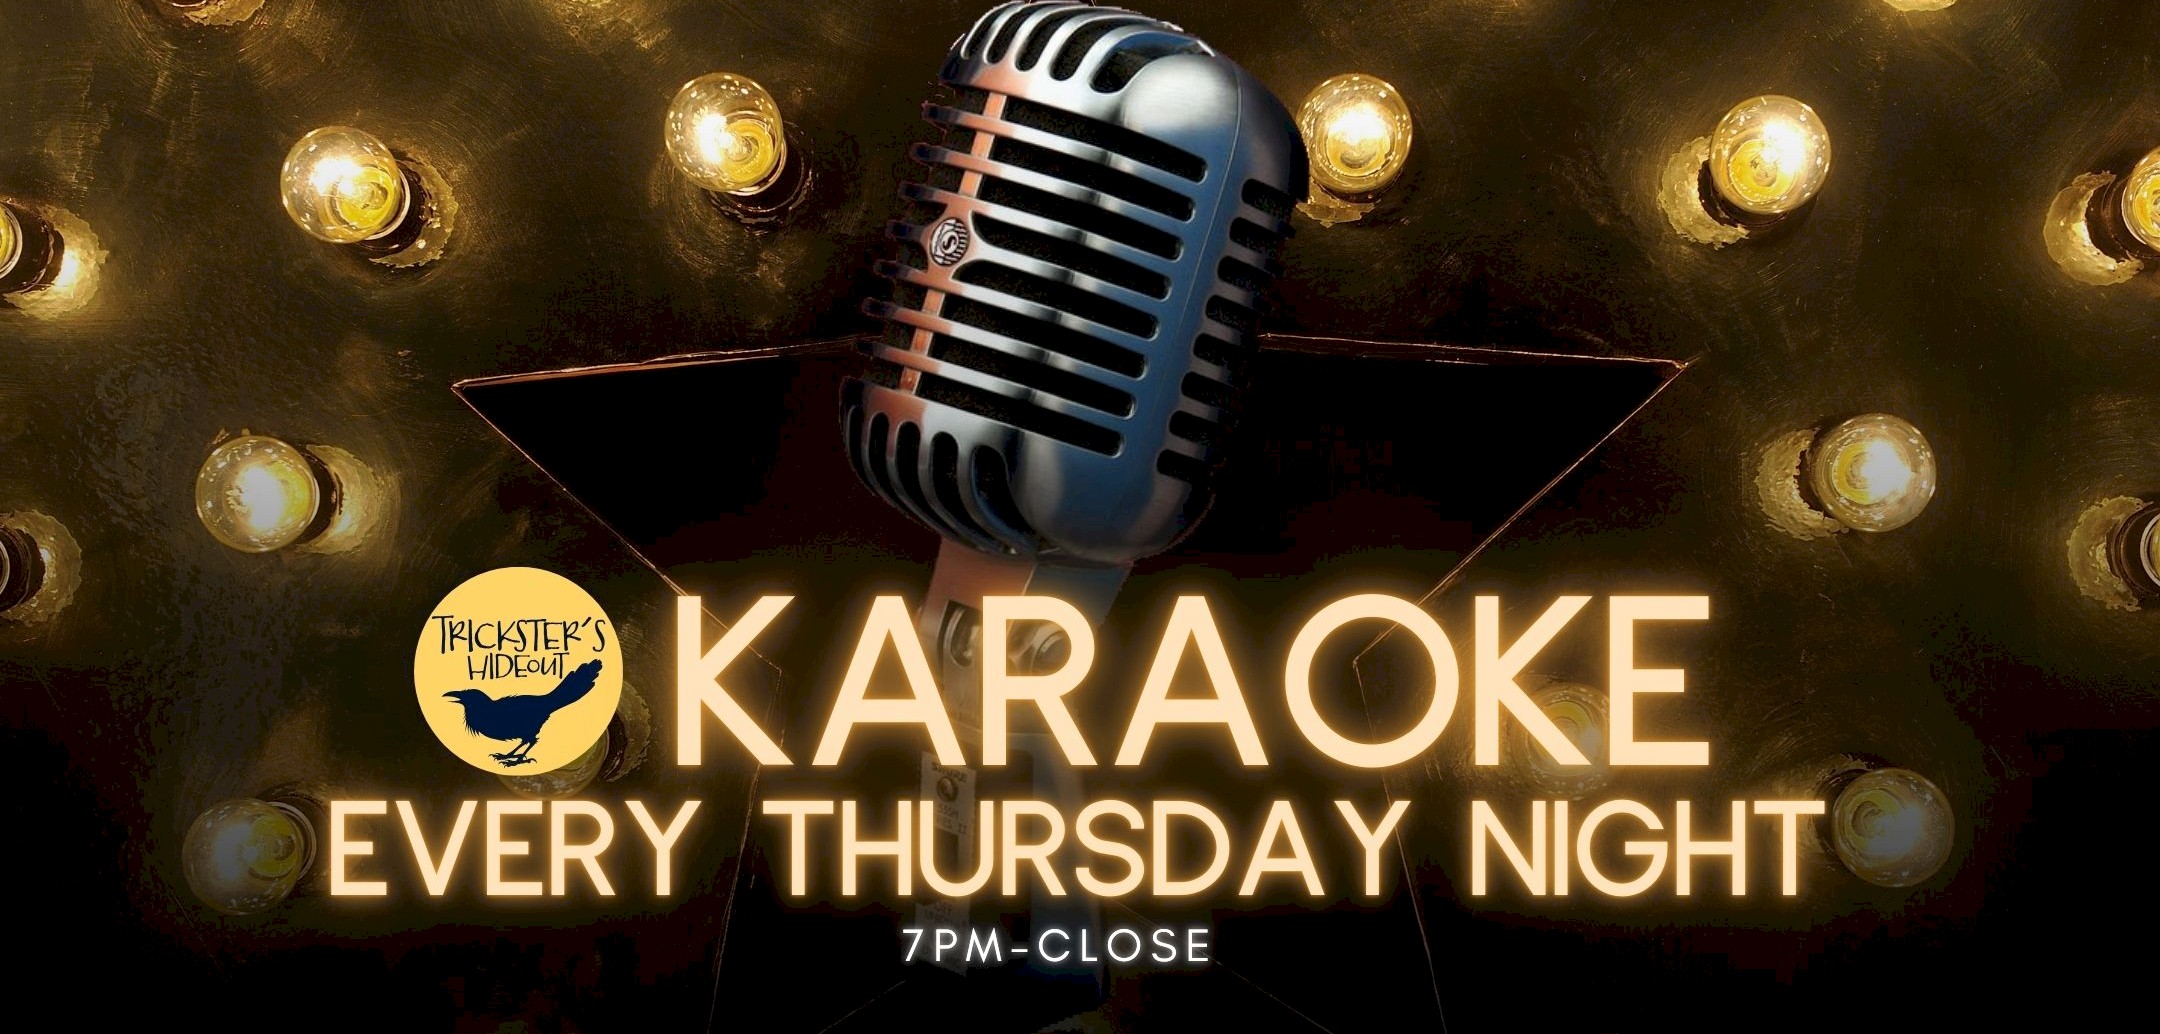 Karaoke Thursdays